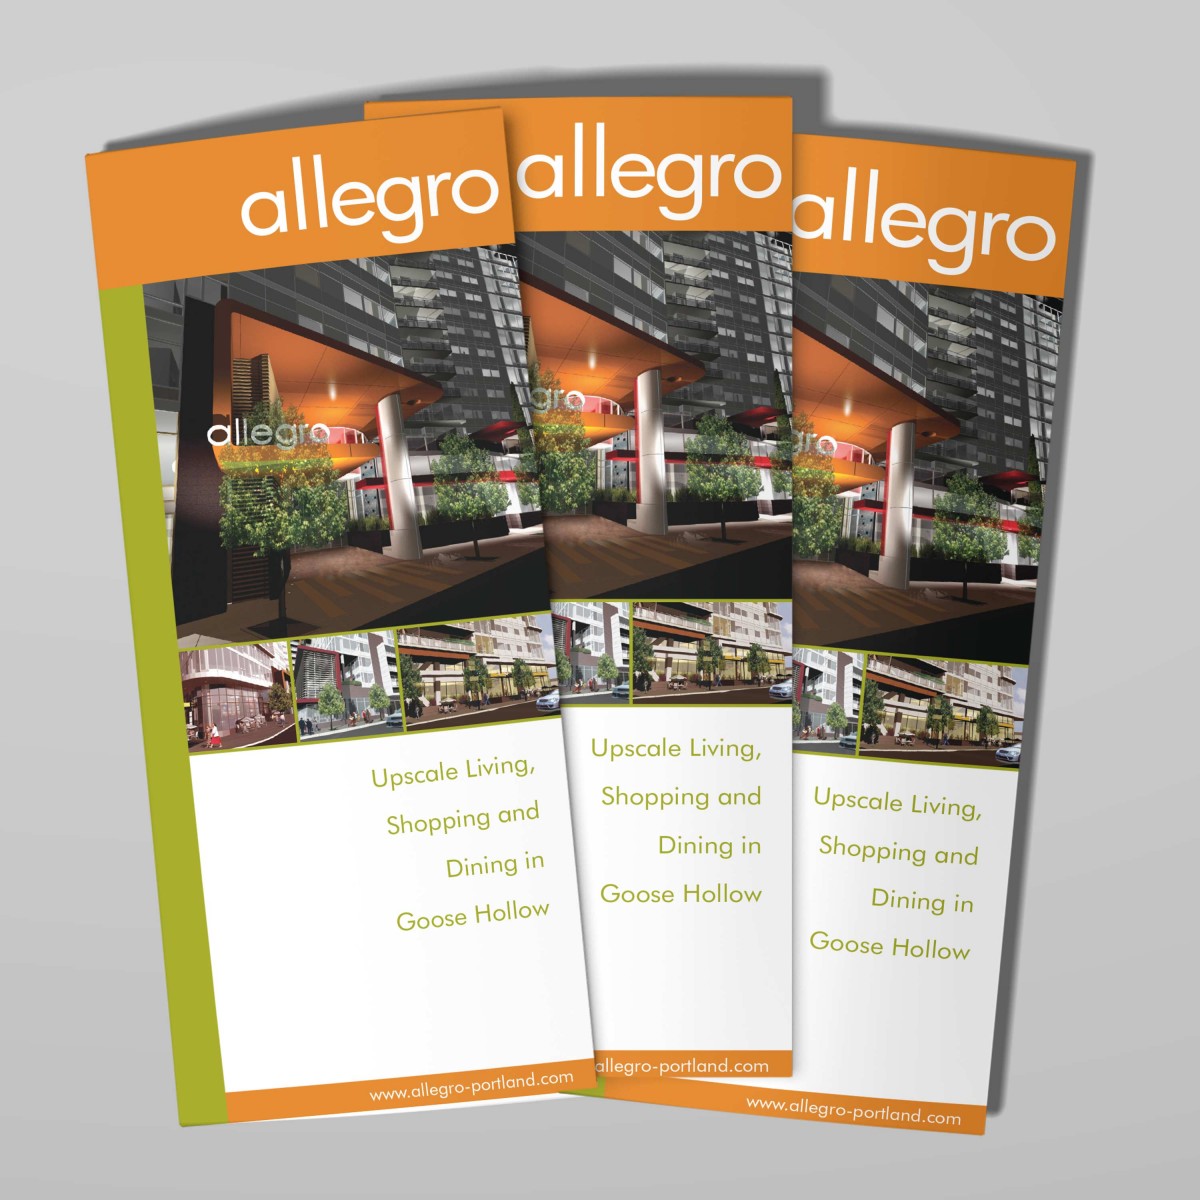 Allegro mixed use development tri-fold brochure cover